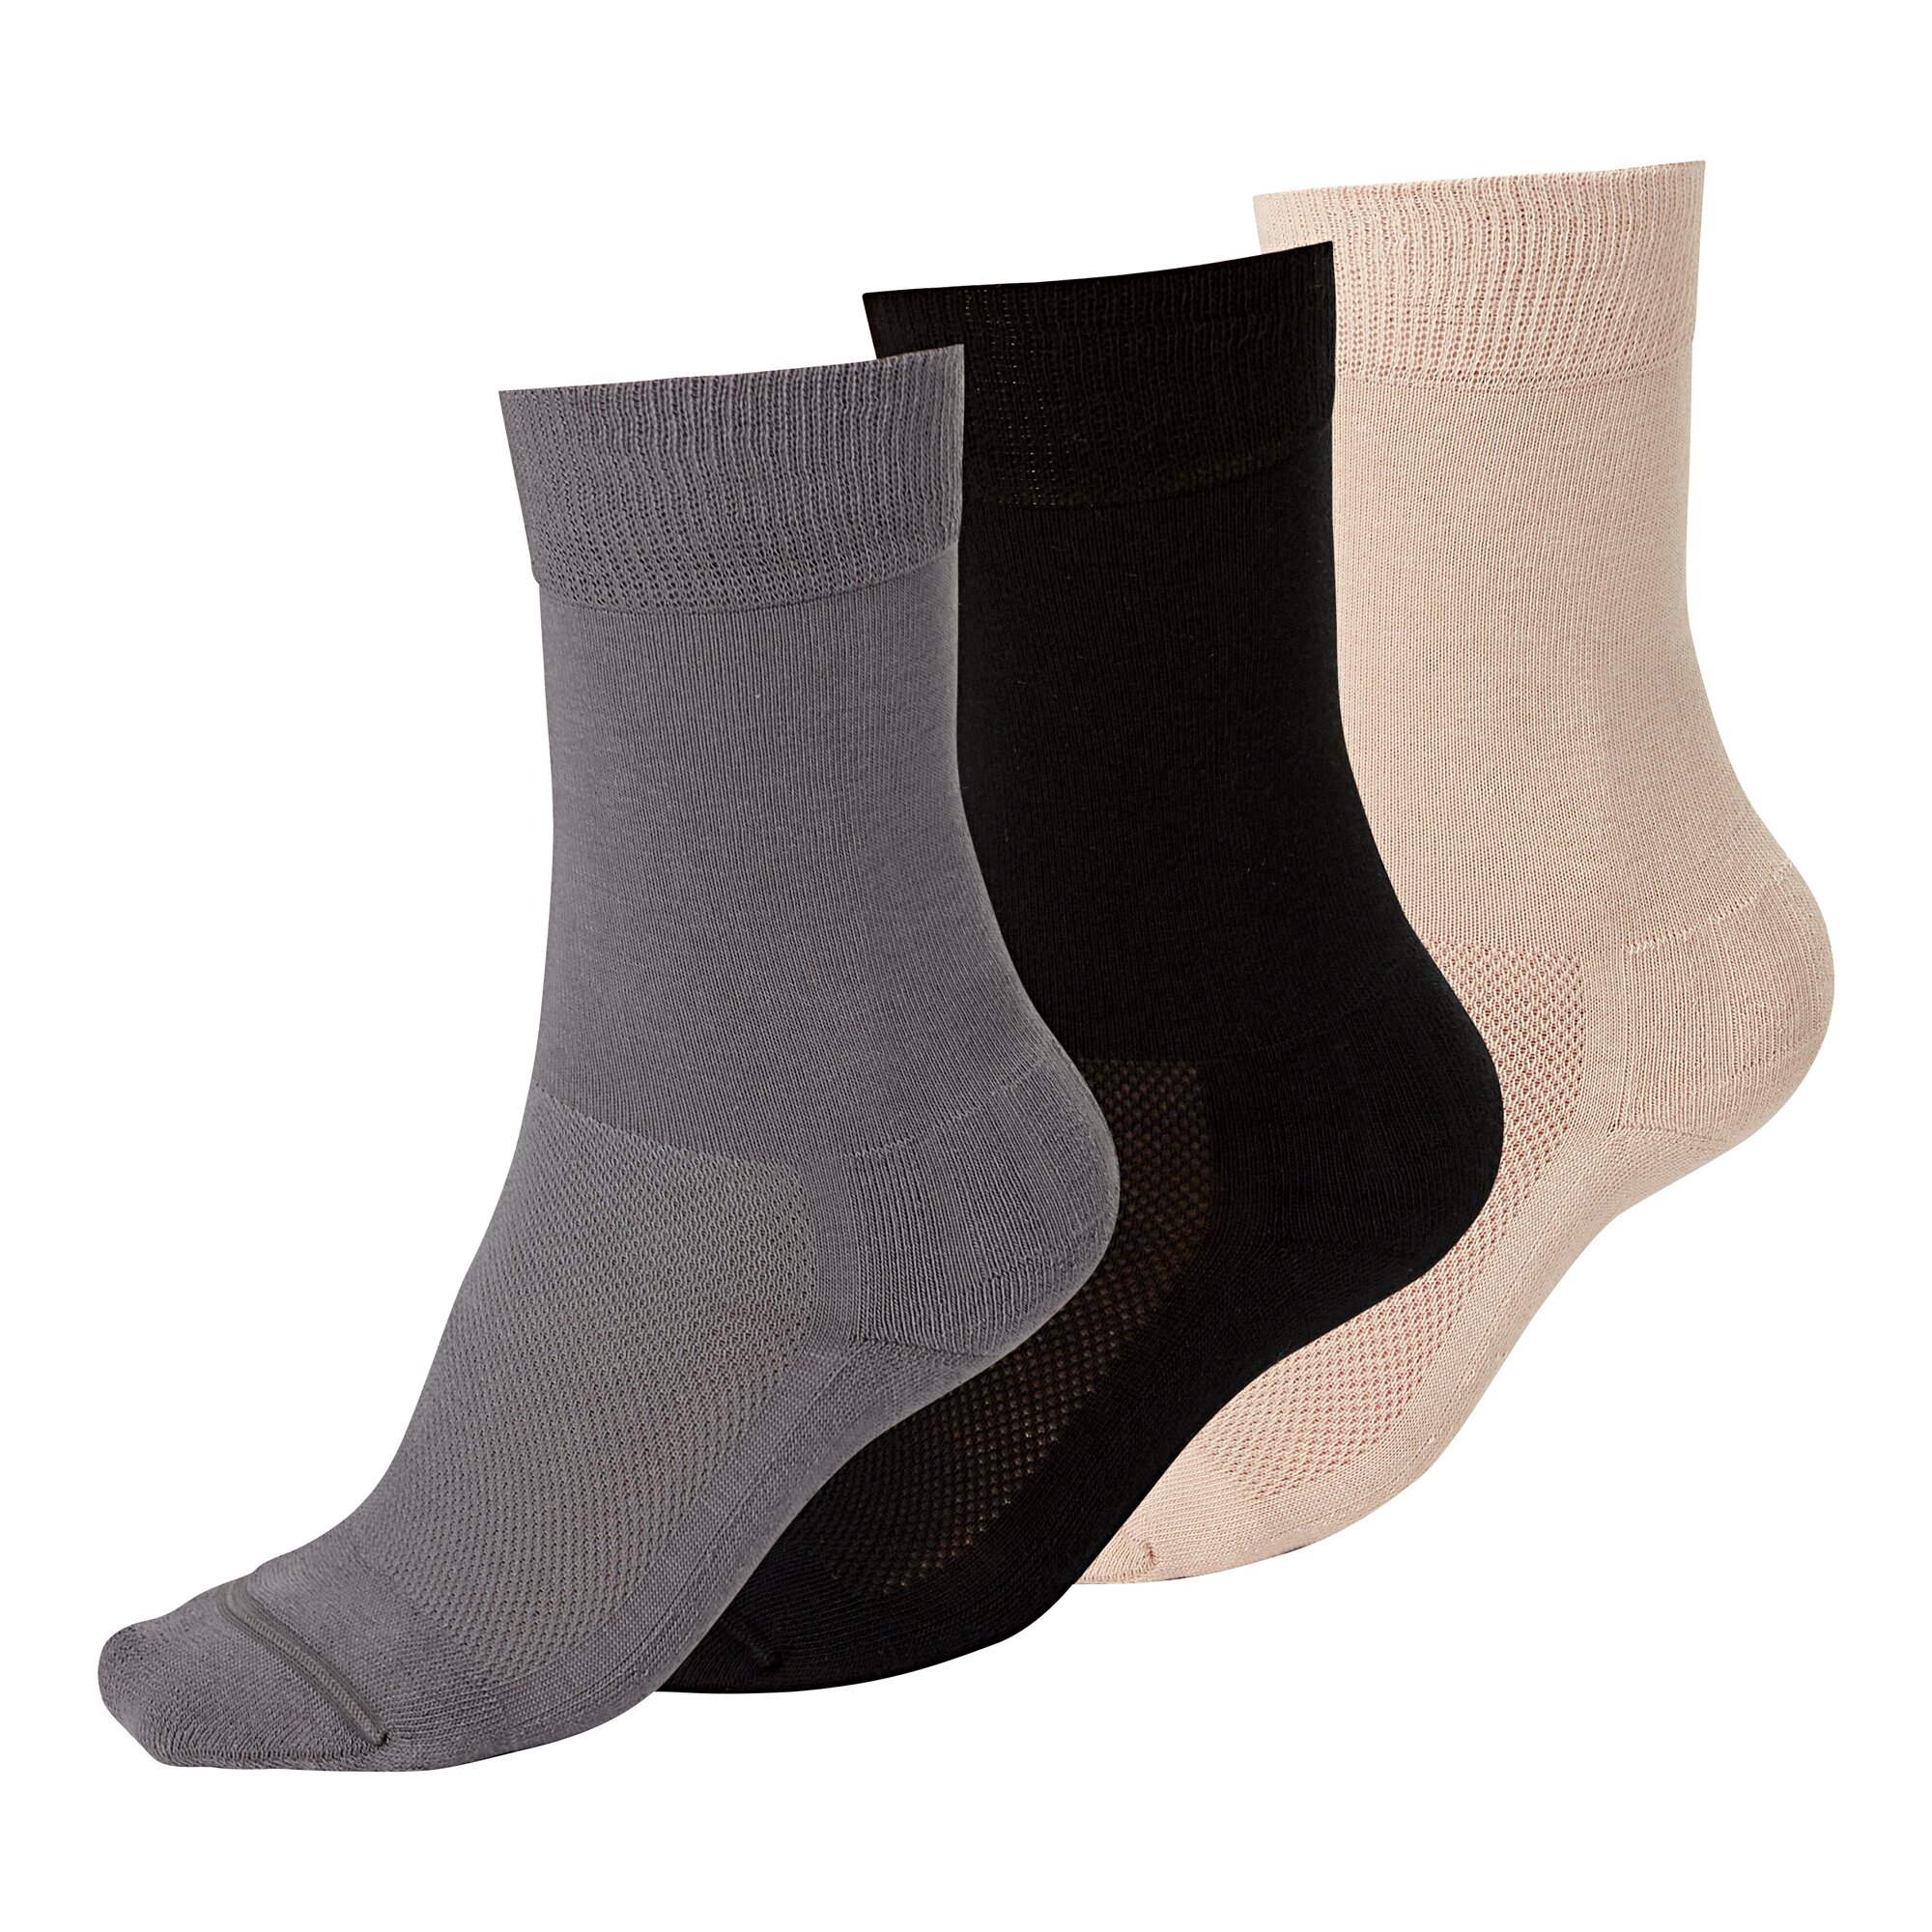 Image of Venenfreund "Socken", 2 Paar, Größe: 2, grau